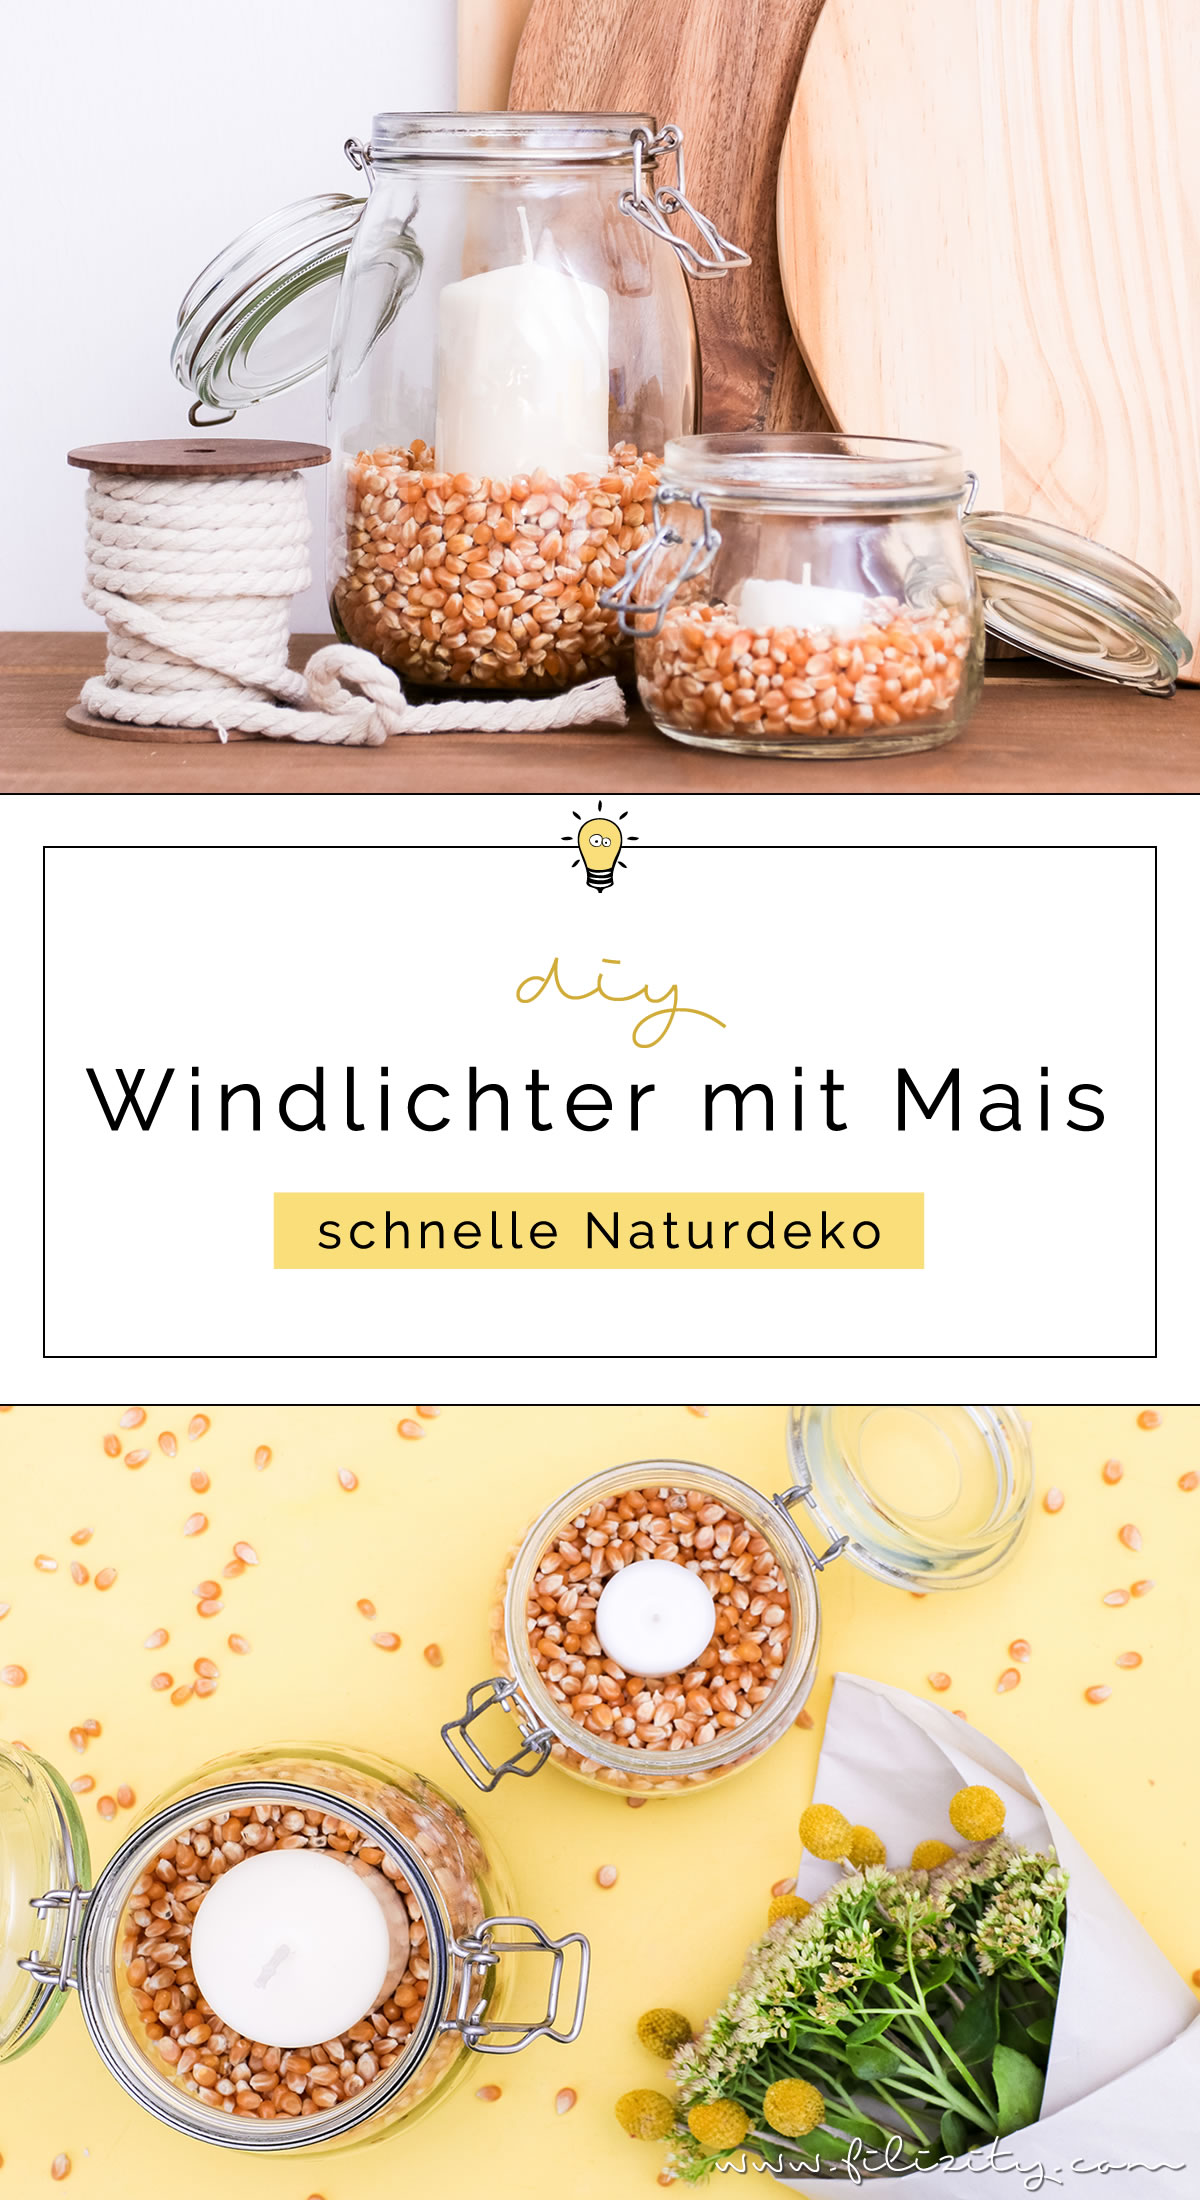 DIY Windlichter mit Maiskörnern - So kannst du natürliche Herbstdeko selber machen | Basteln mit Kindern | Filizity.com | DIY-Blog aus dem Rheinland #herbst #deko #natur